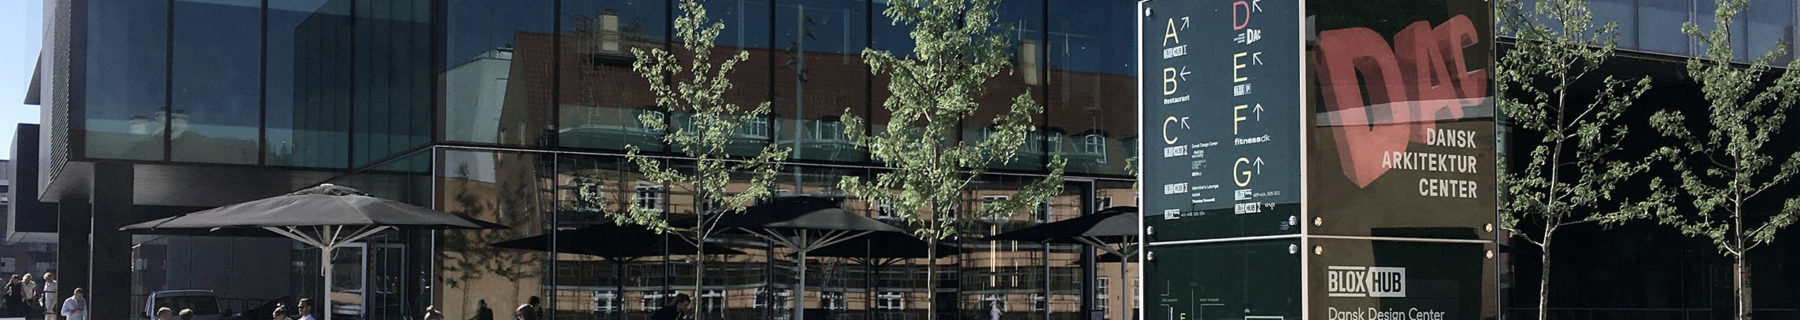 Triagonal's bespoke exterior wayfinding design for BLOX in Copenhagen